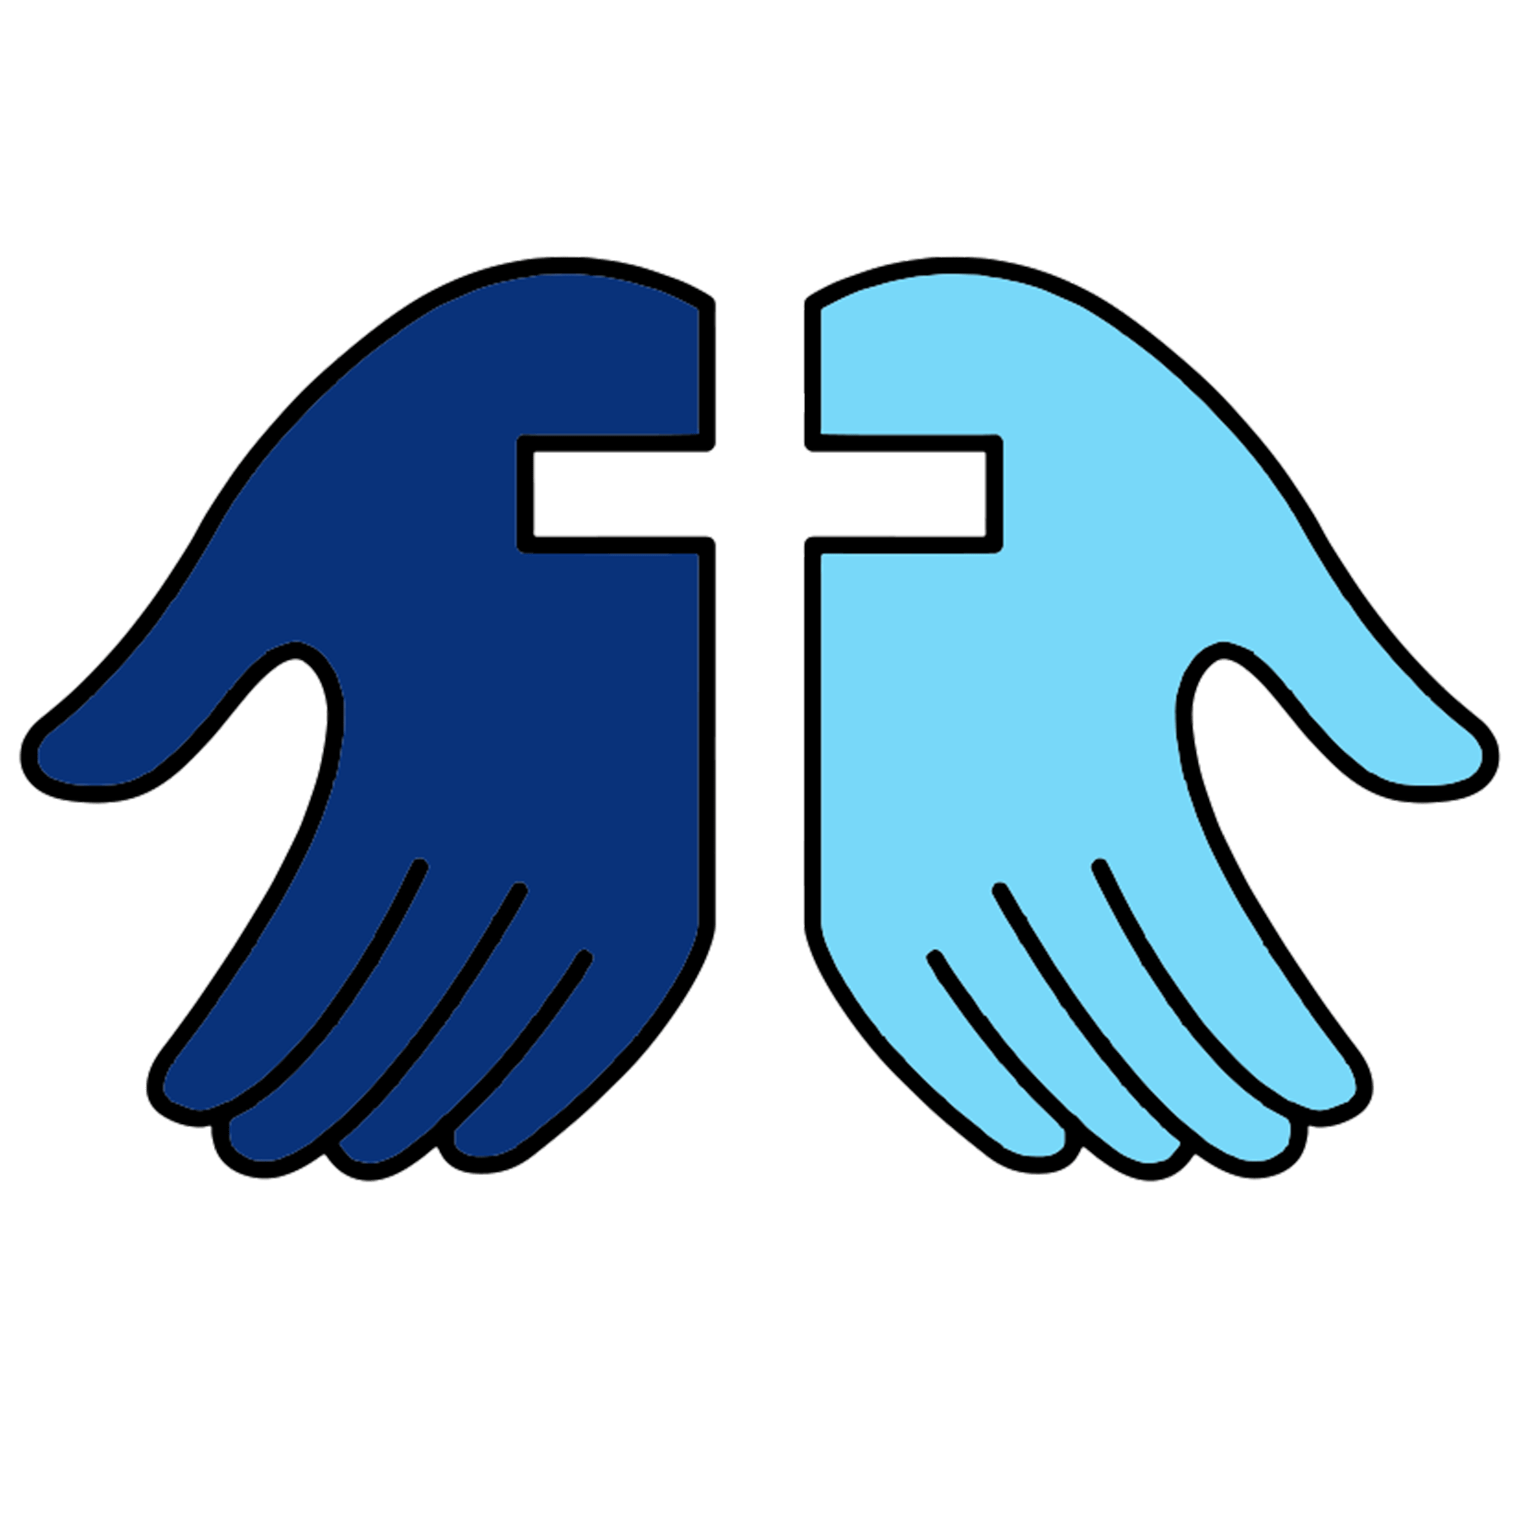 forgiveness symbols catholic